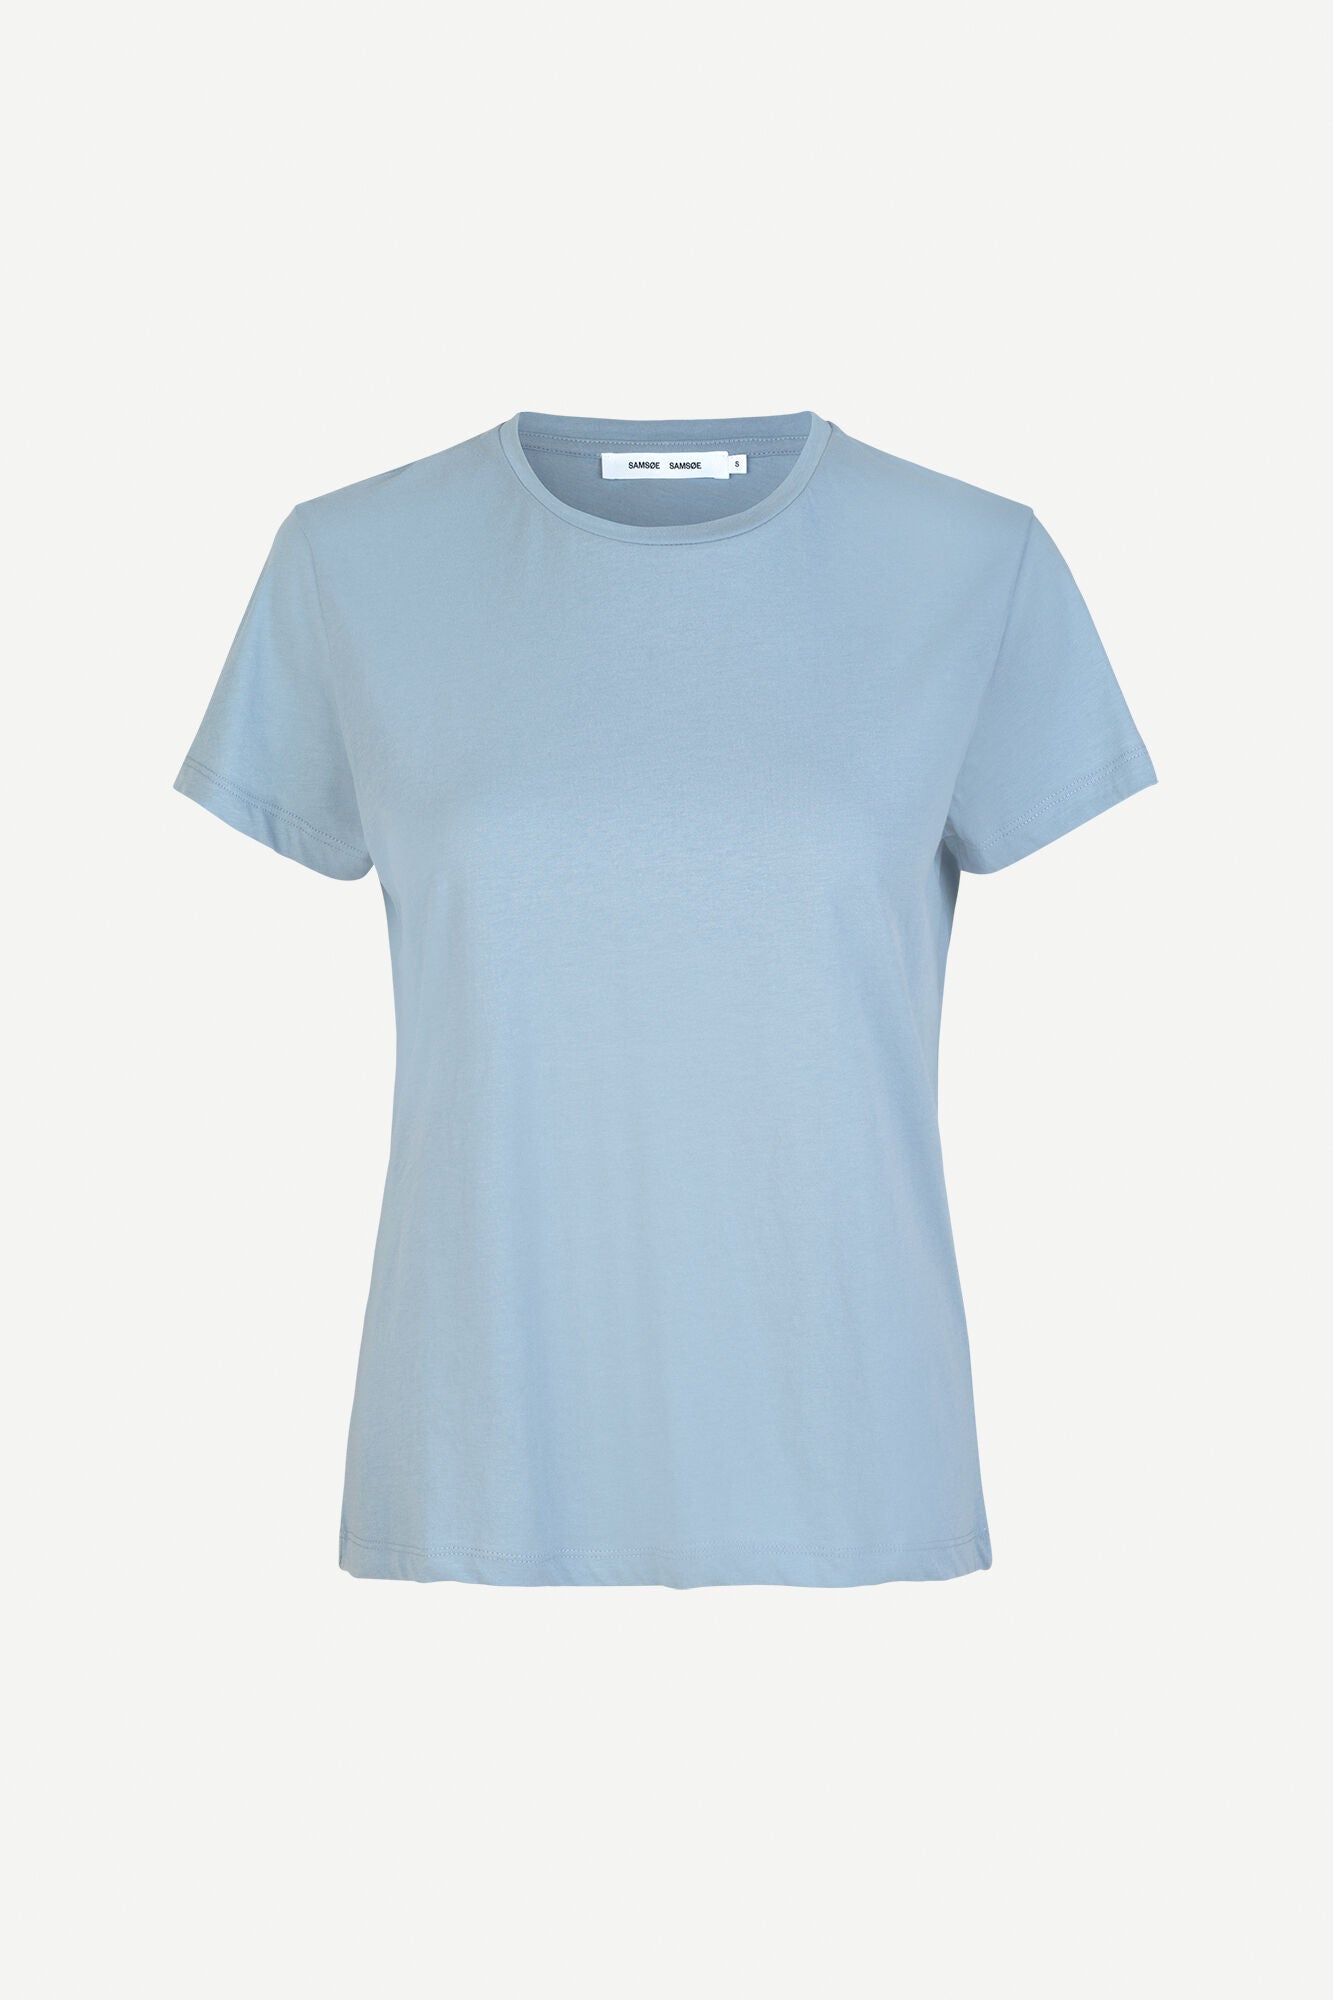 Basic shirt in dusty blue